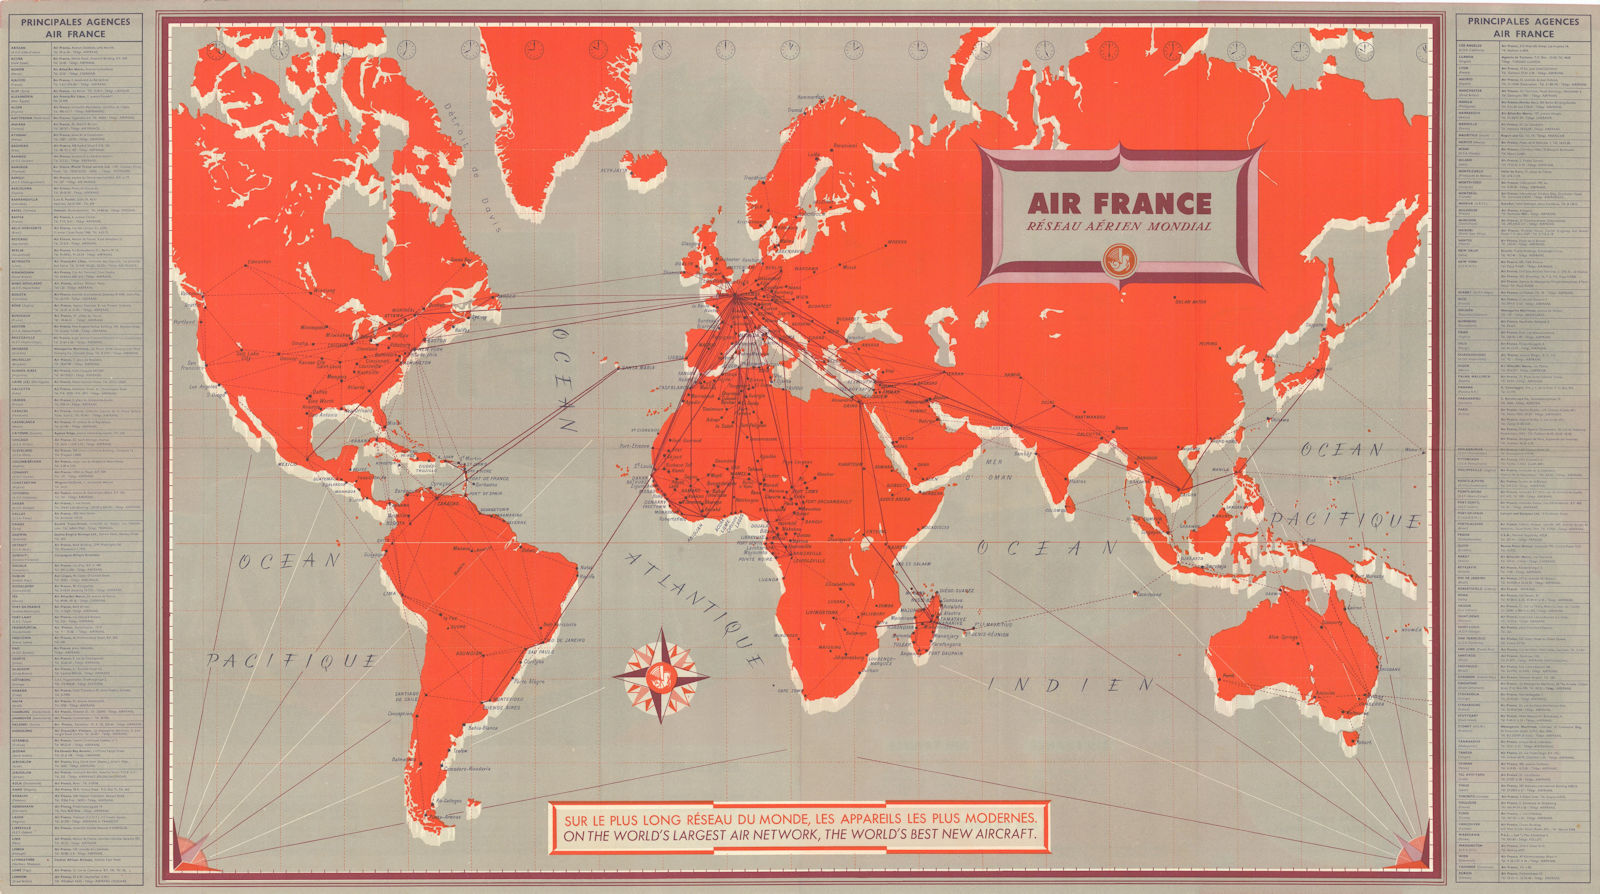 Air France - Réseau Aérien Mondial. Airline network route map. 49x88cm 1956